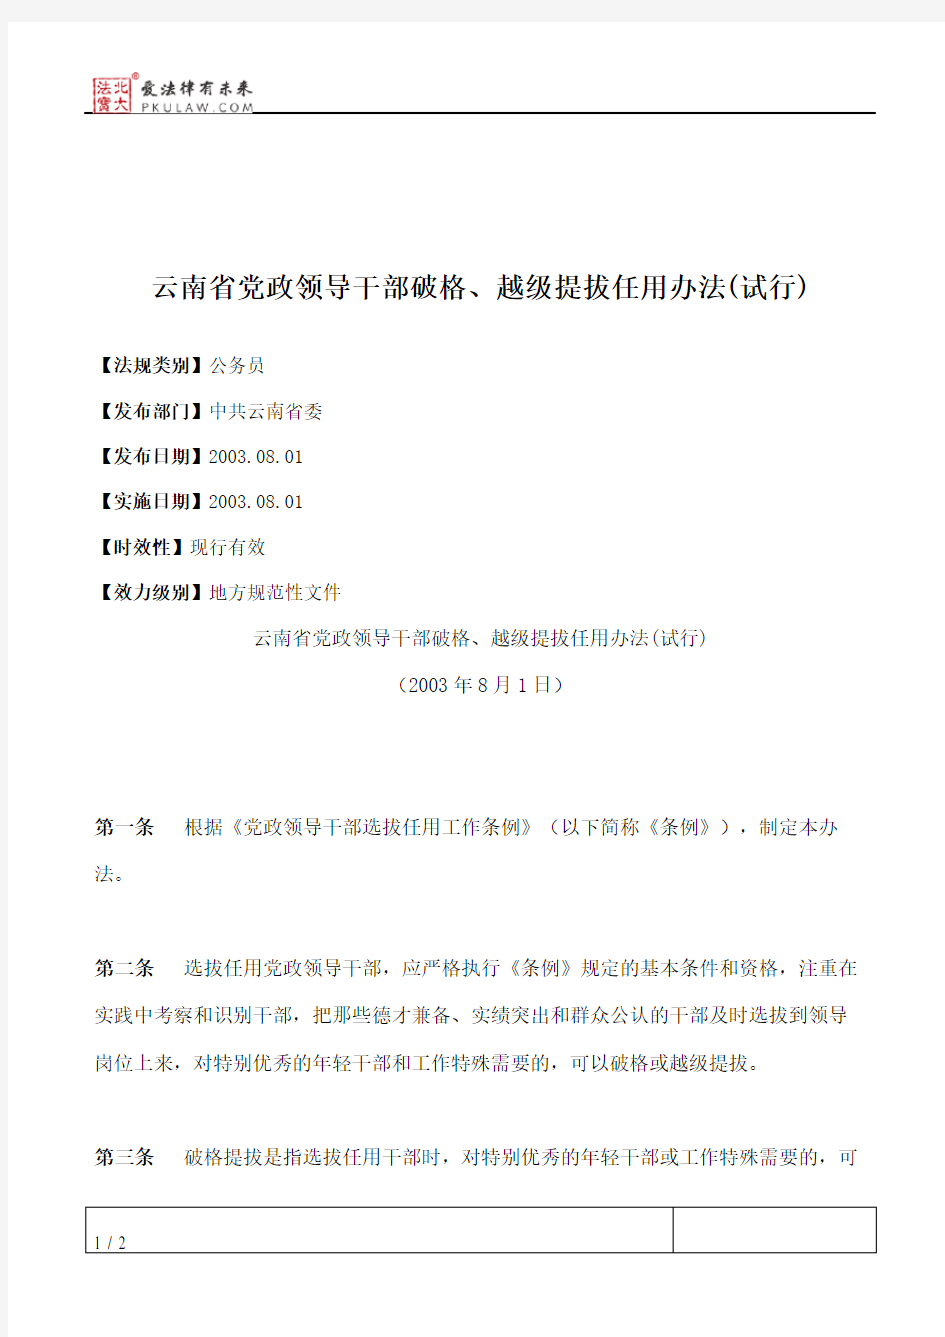 云南省党政领导干部破格、越级提拔任用办法(试行)